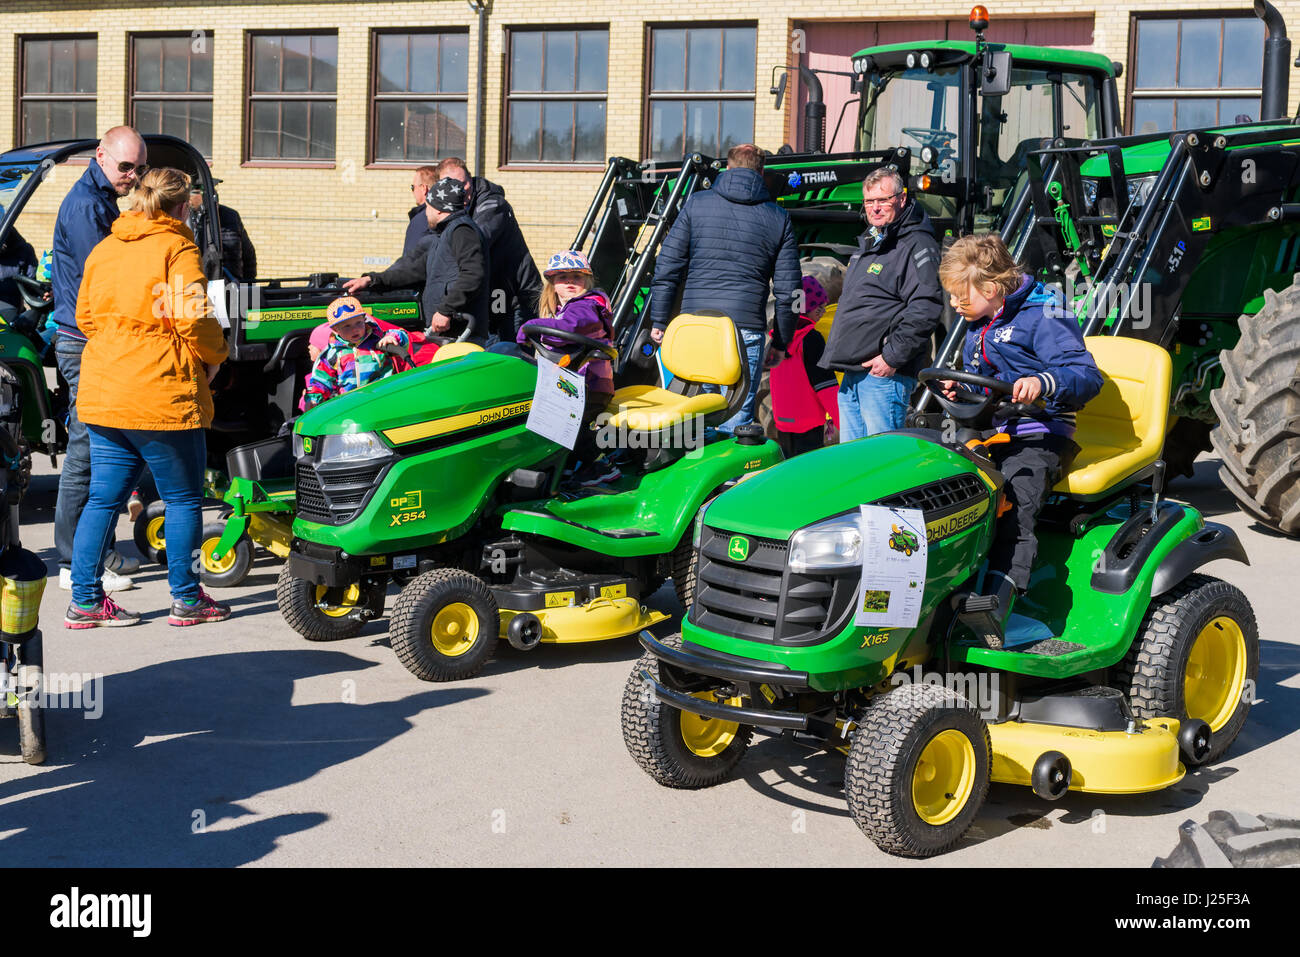 Brakne Hoby, Schweden - 22. April 2017: Dokumentation der öffentlichen Kleinbauern Tag. Familien besuchen die John Deere Traktor-Ausstellung. Spielende Kinder Stockfoto